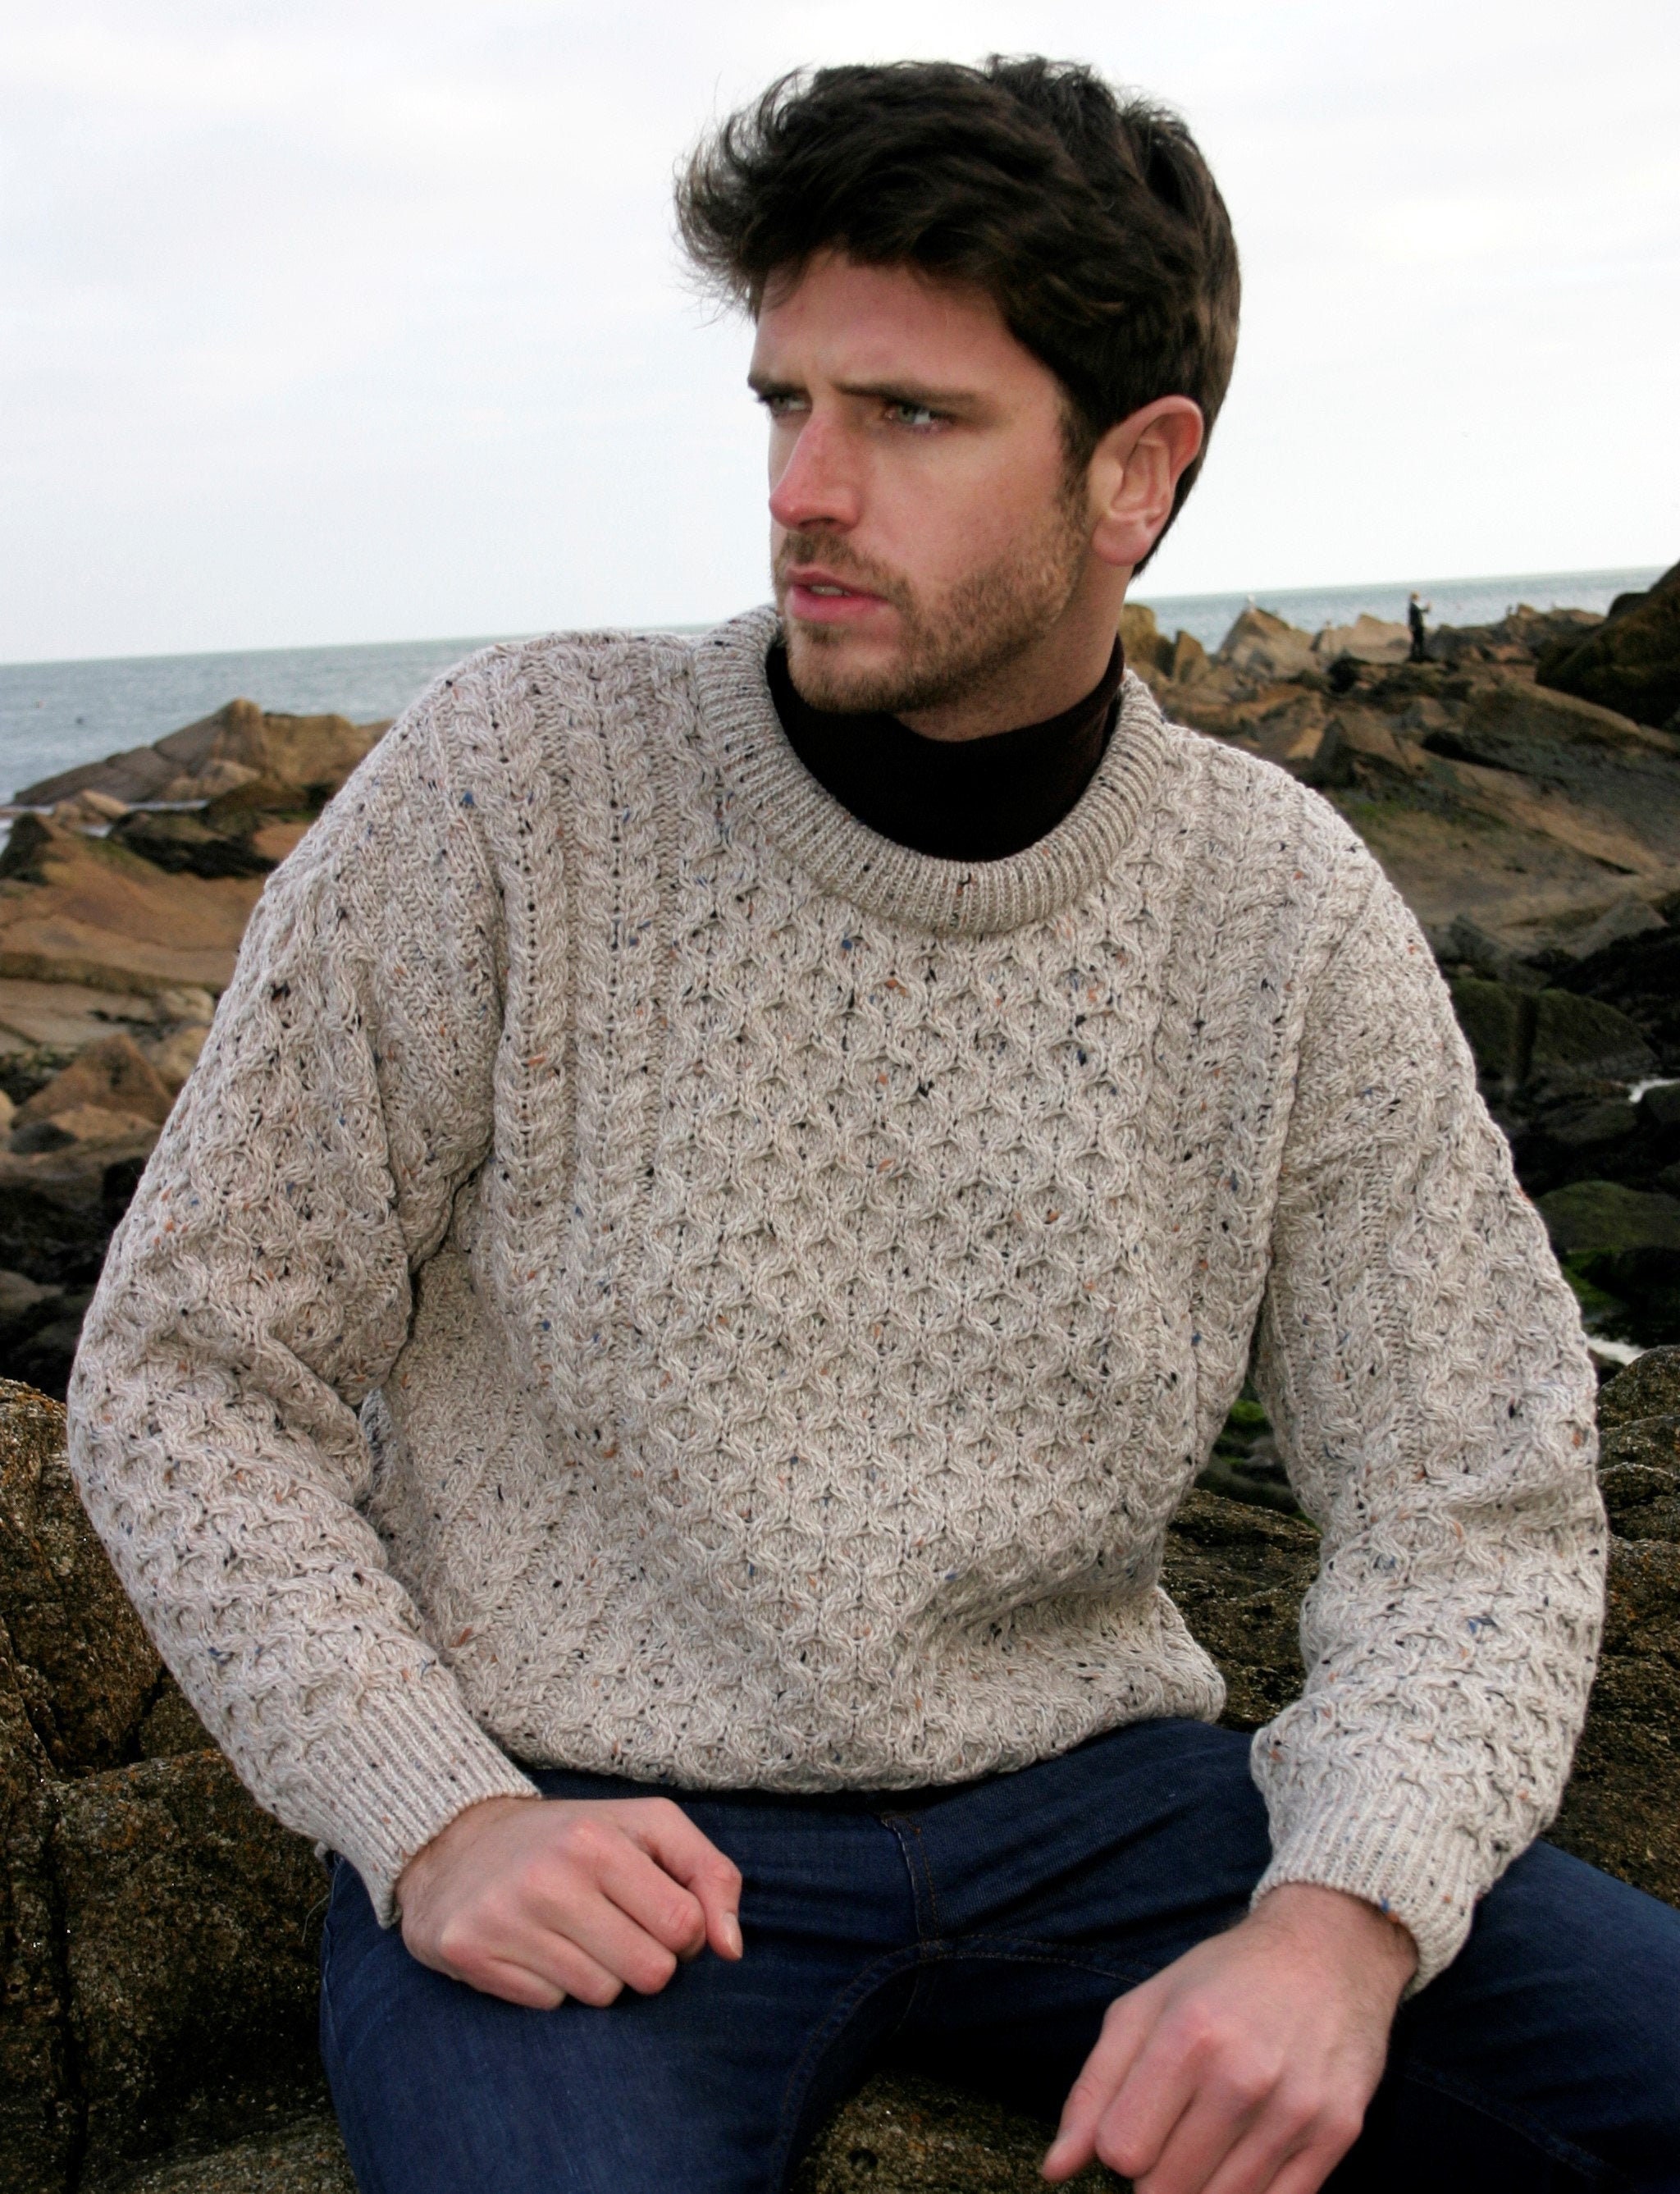 Traditional Aran Sweater, Irish Fisherman Sweater,100% Soft Merino wool- Made in Ireland- Heavyweight- Dark Green